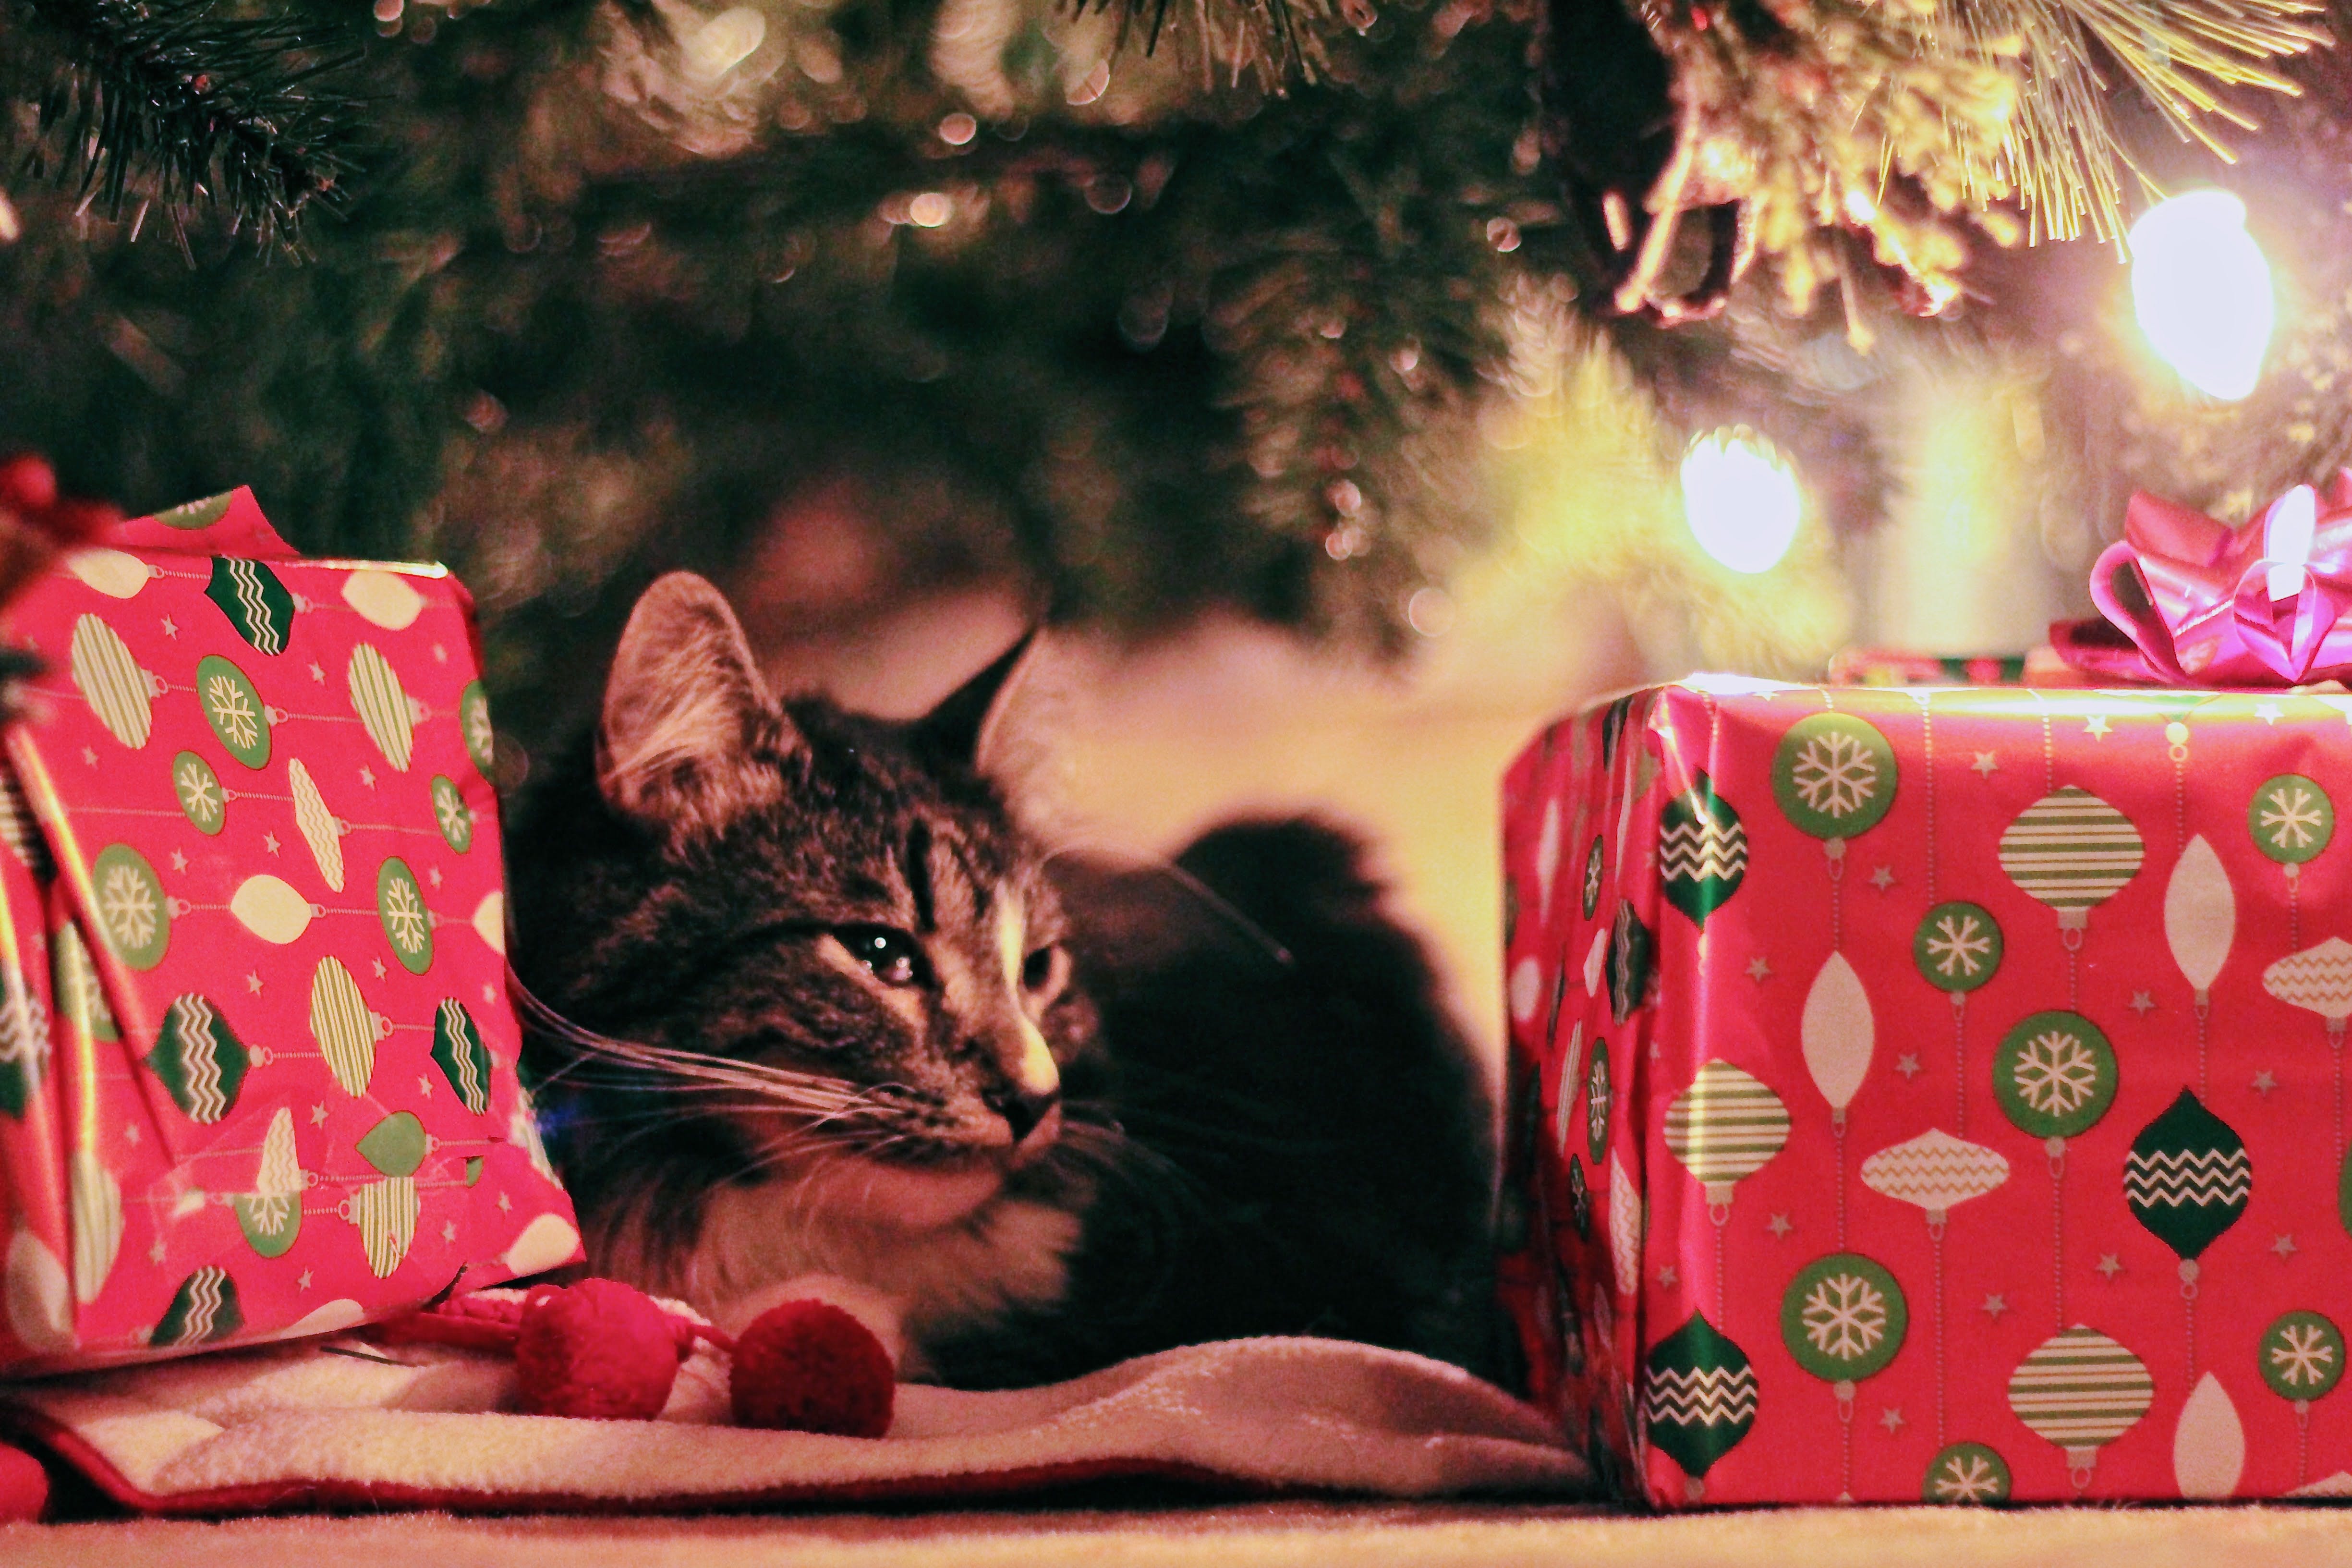 Cadeau de Noël pour animaux : code promo, bon plan… 4 façons d'économiser -  Le Parisien